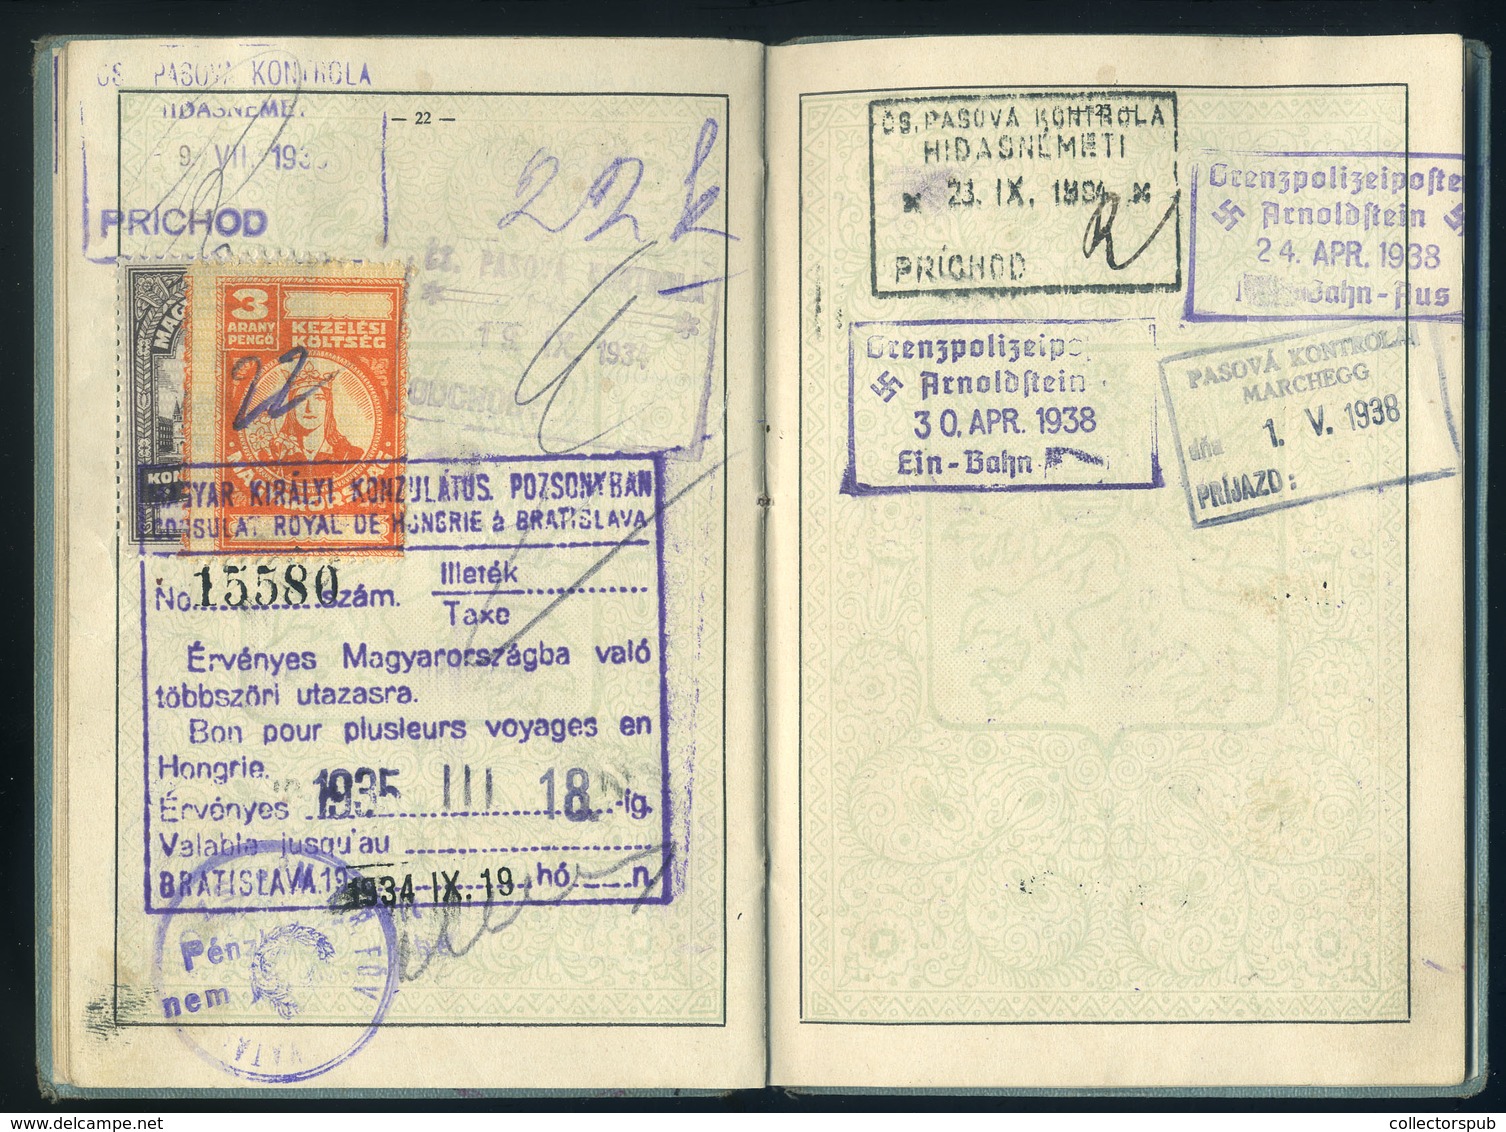 KASSA 1926 Csehszlovákia, fényképes útlevél (2 oldalon konzuli illetékbélyegek)  /  Czechoslovakia photo passport (consu